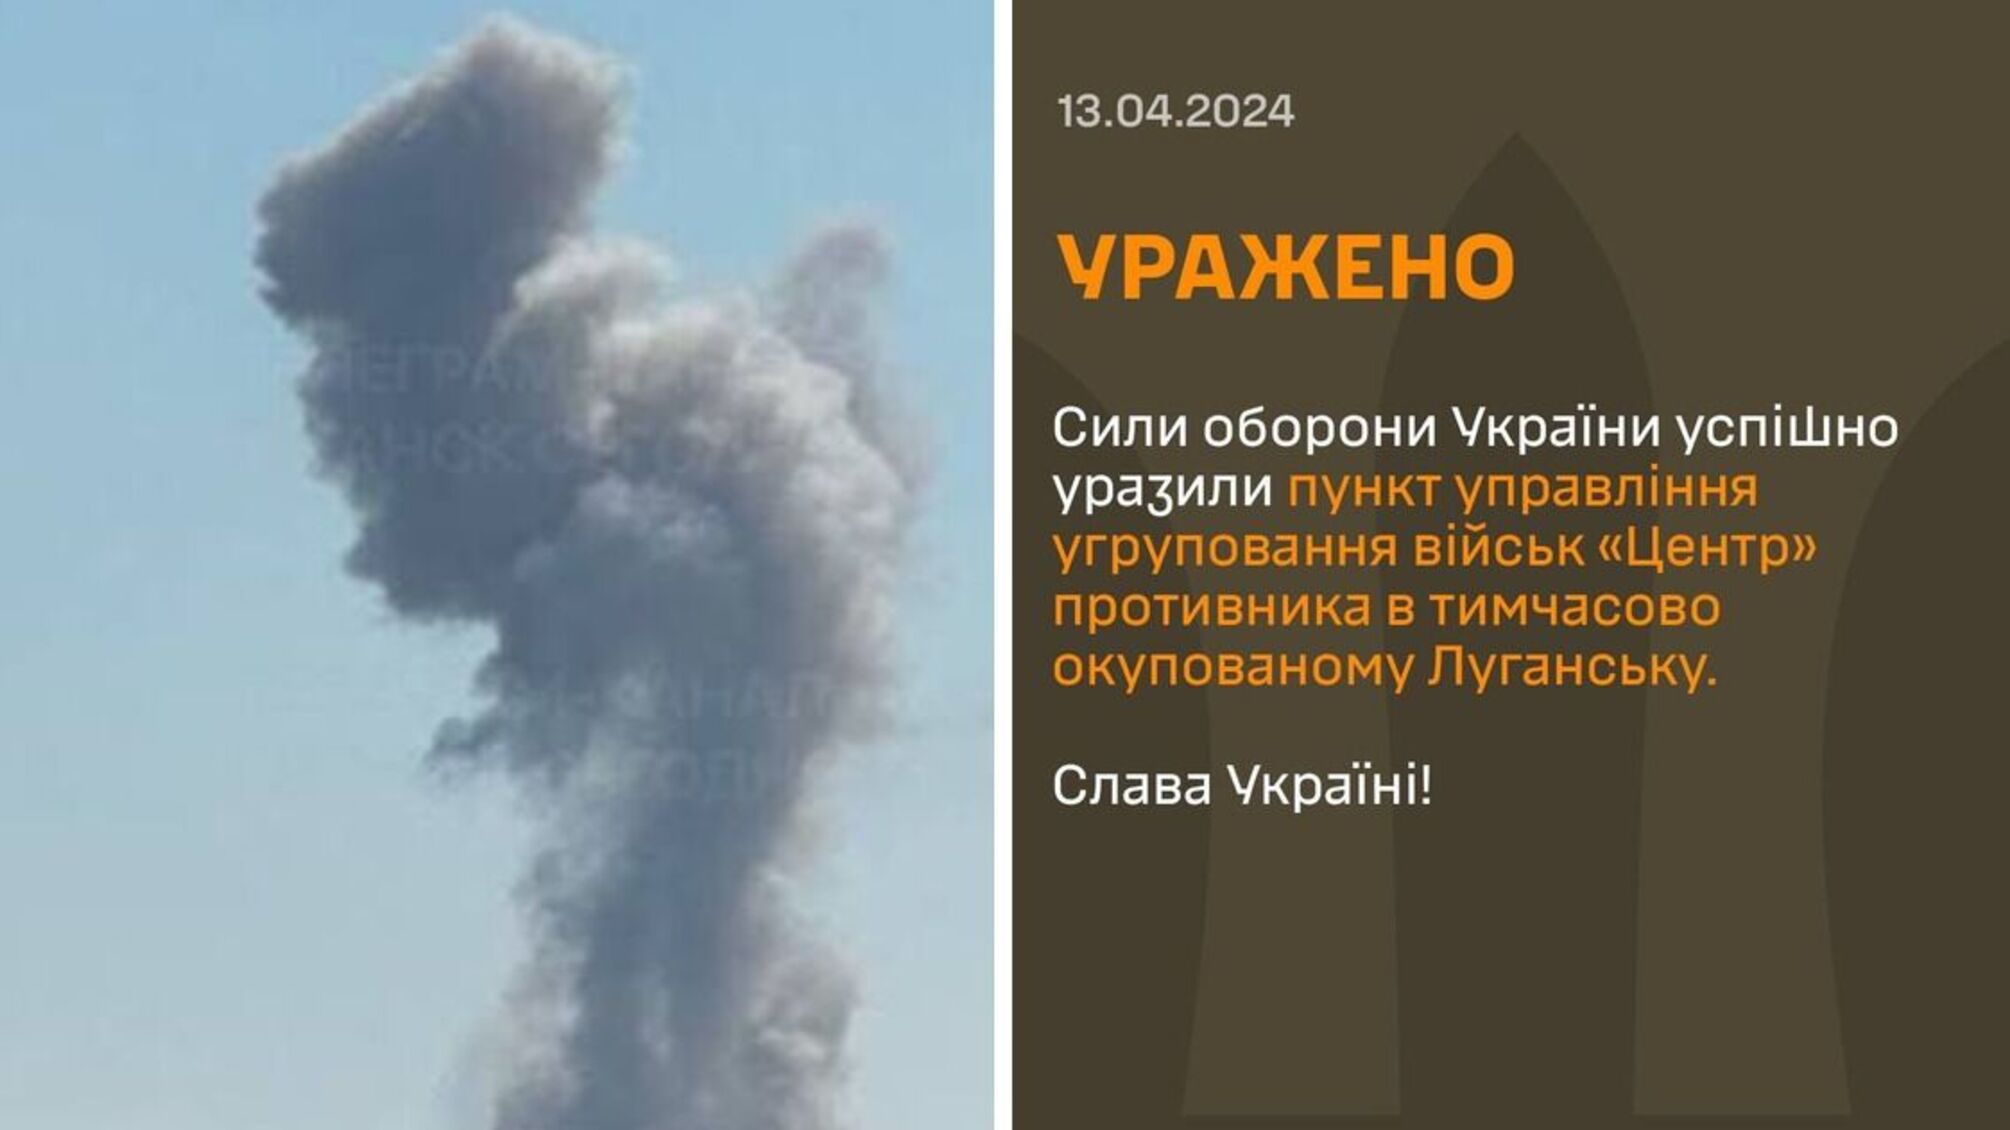 Потужні вибухи пролунали у тимчасово окупованому Луганську пролунали 13 квітня